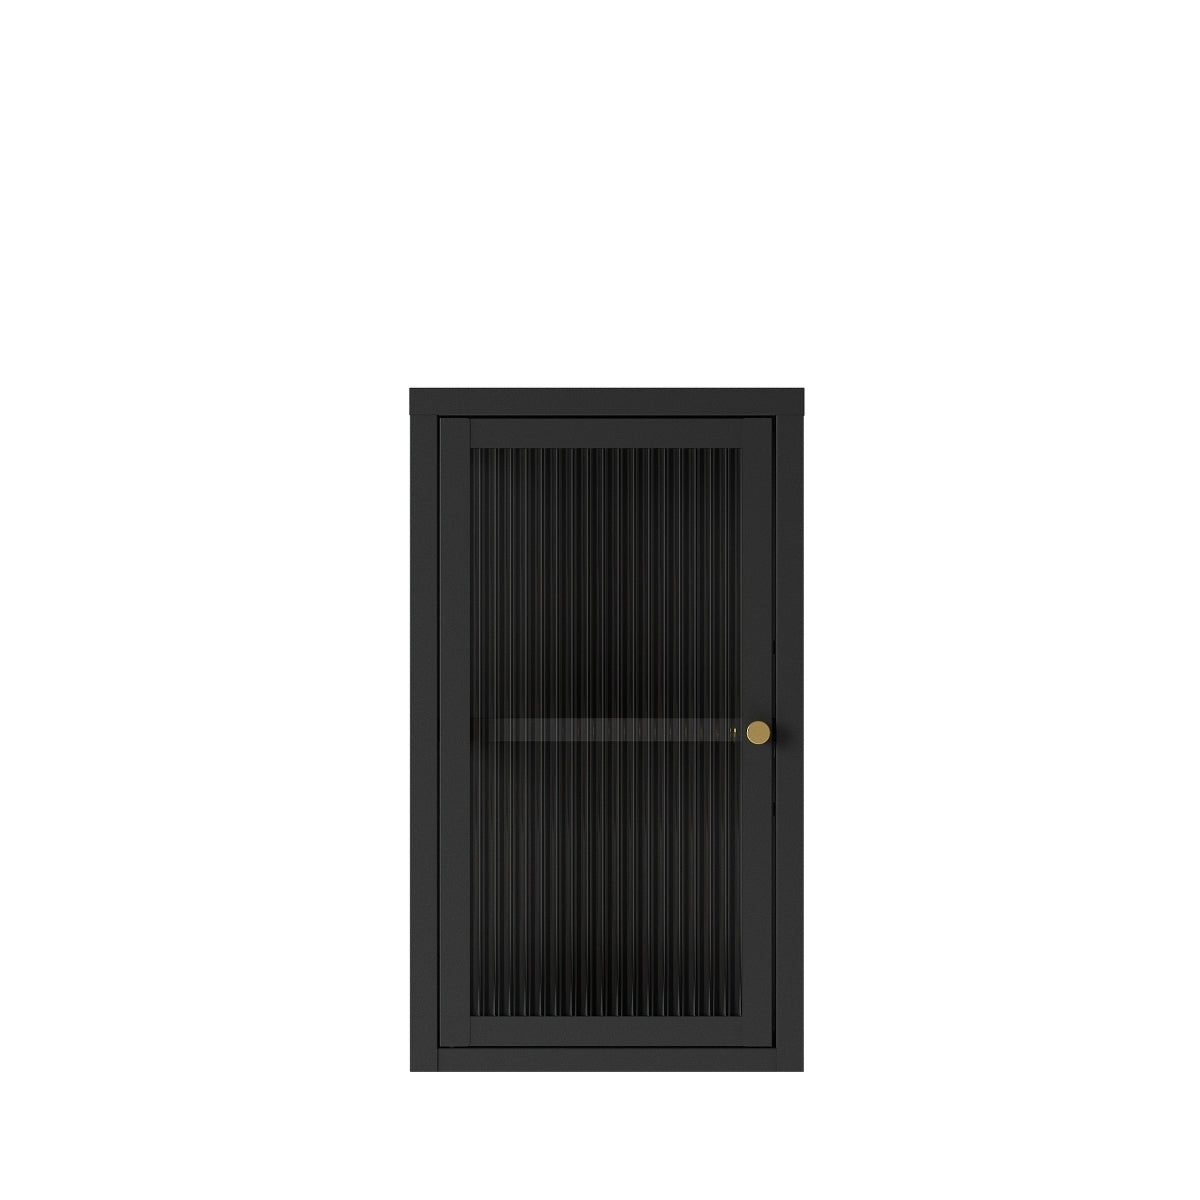 Av Nordly | Marcel väggskåp - 1 dörr